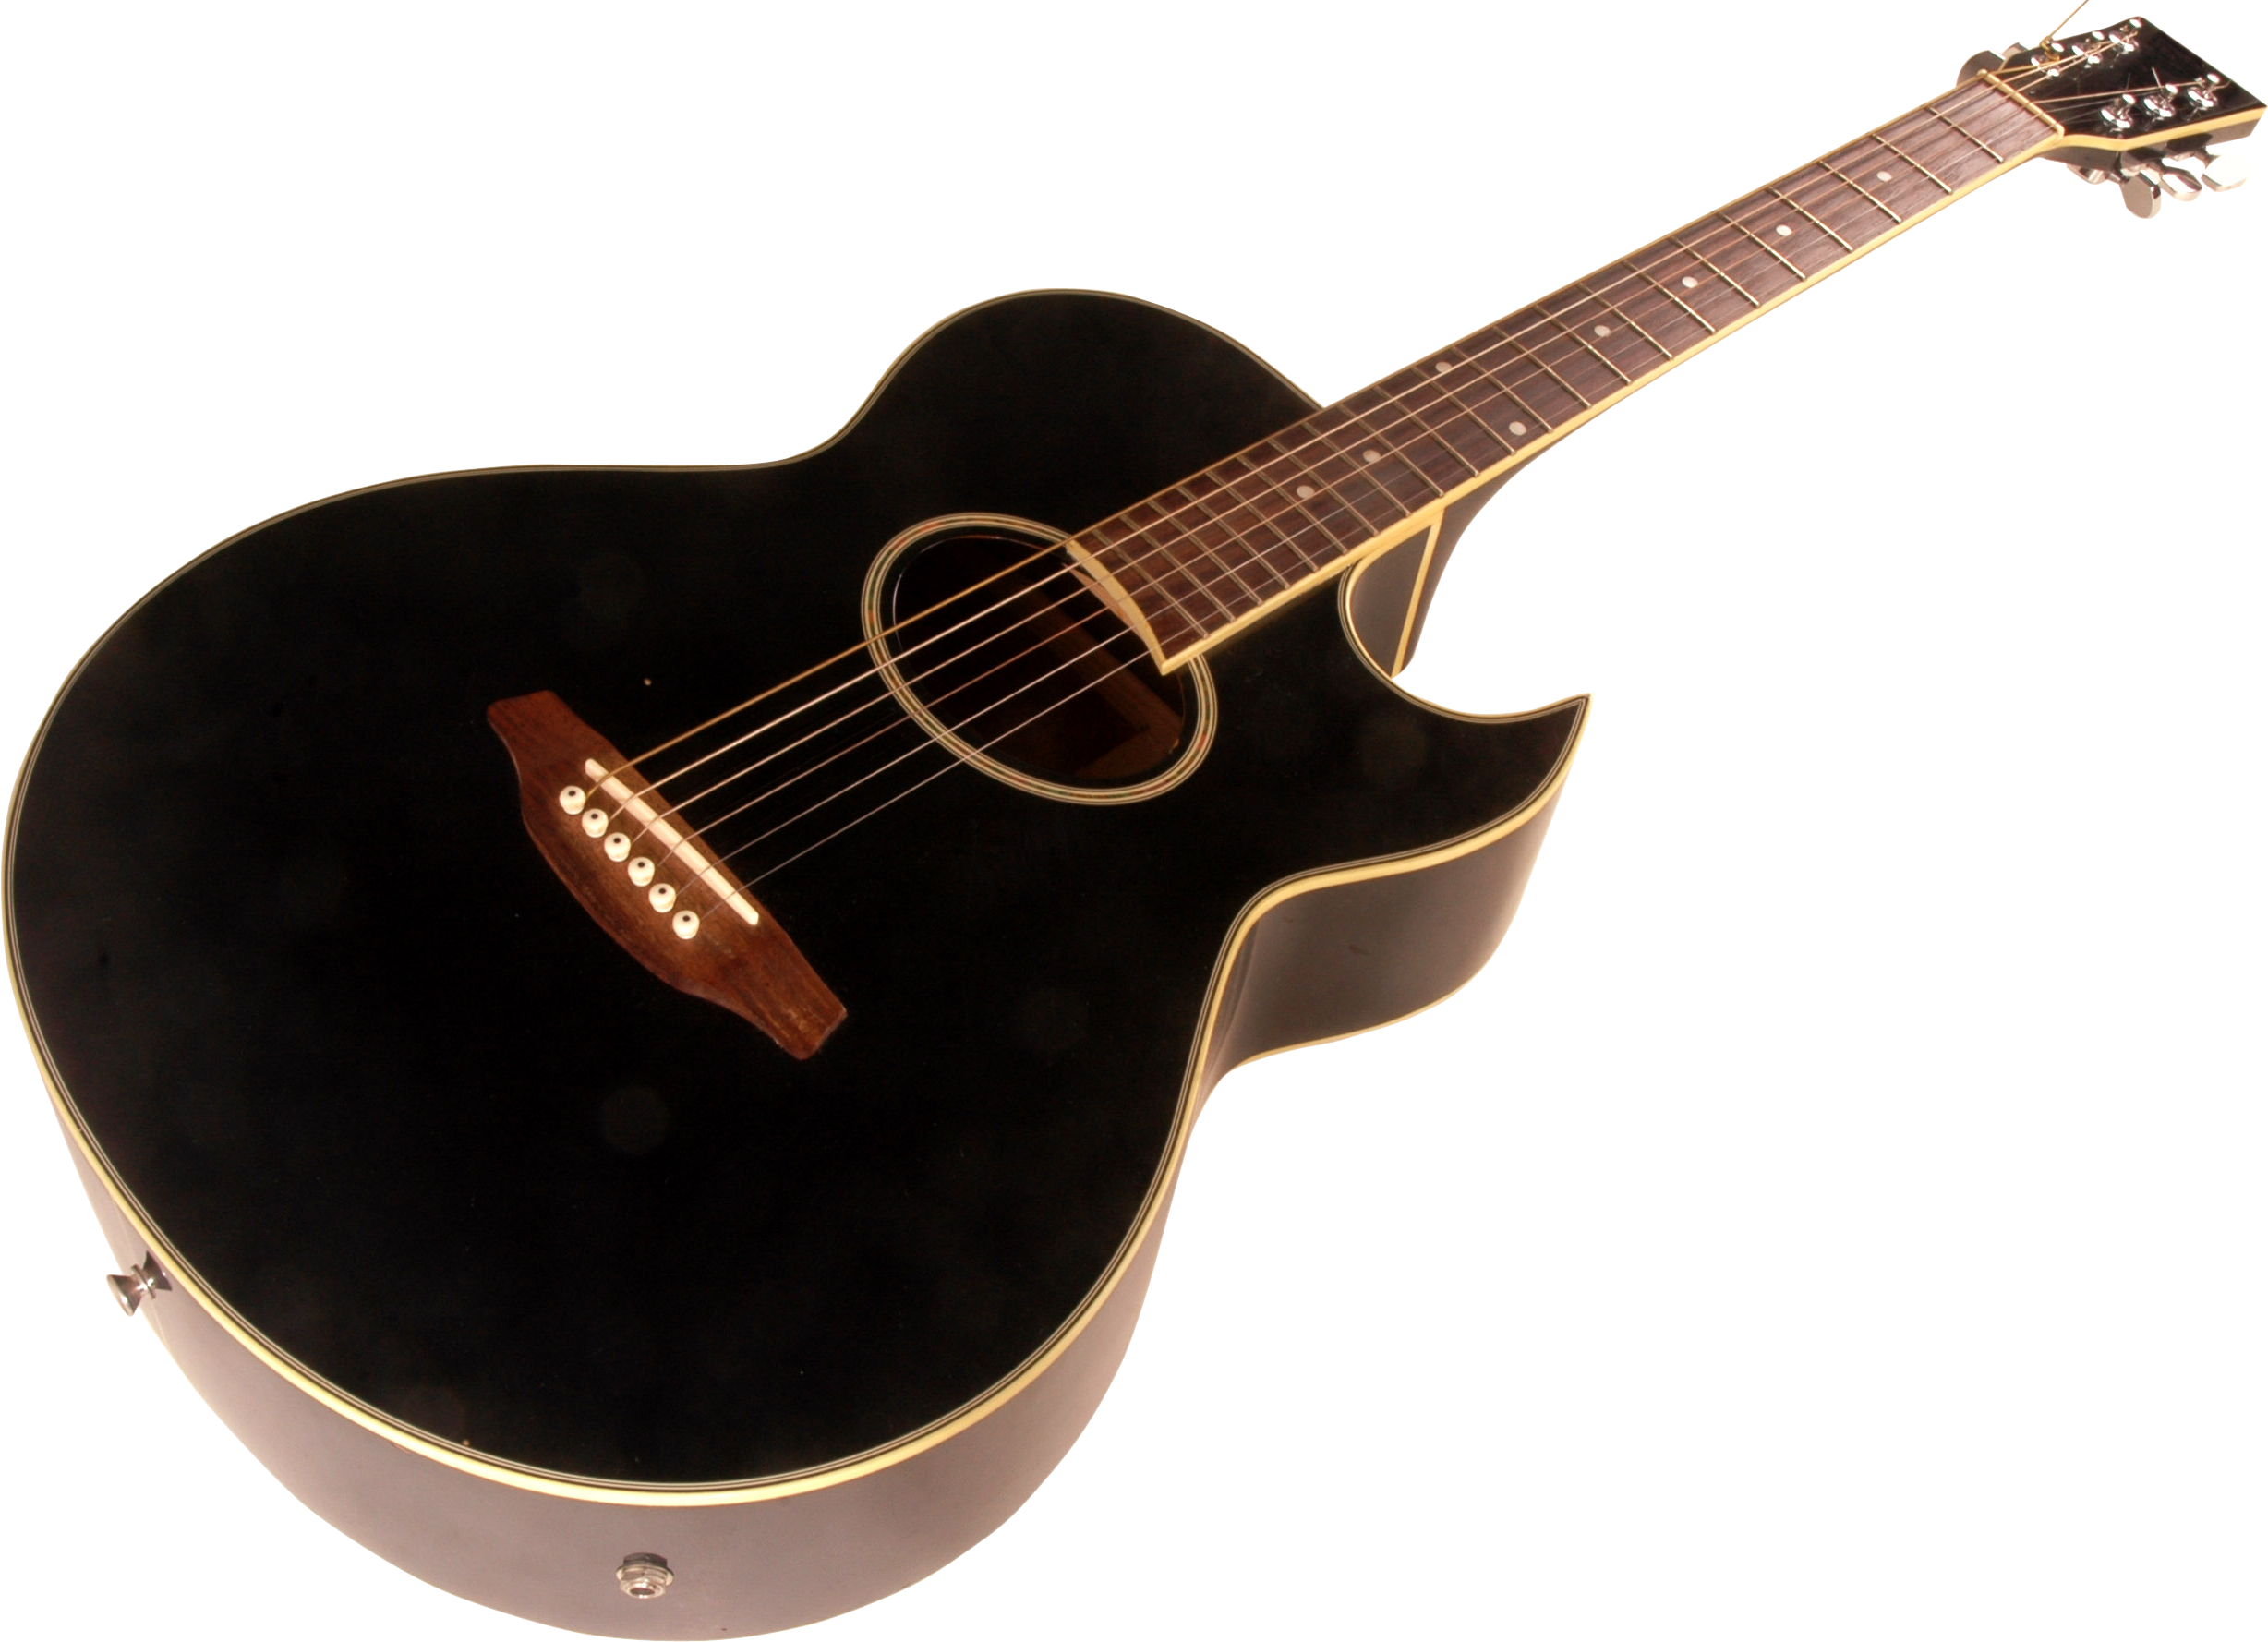 Acoustic Guitar Png Image - Guitar Origin (2456x1778), Png Download